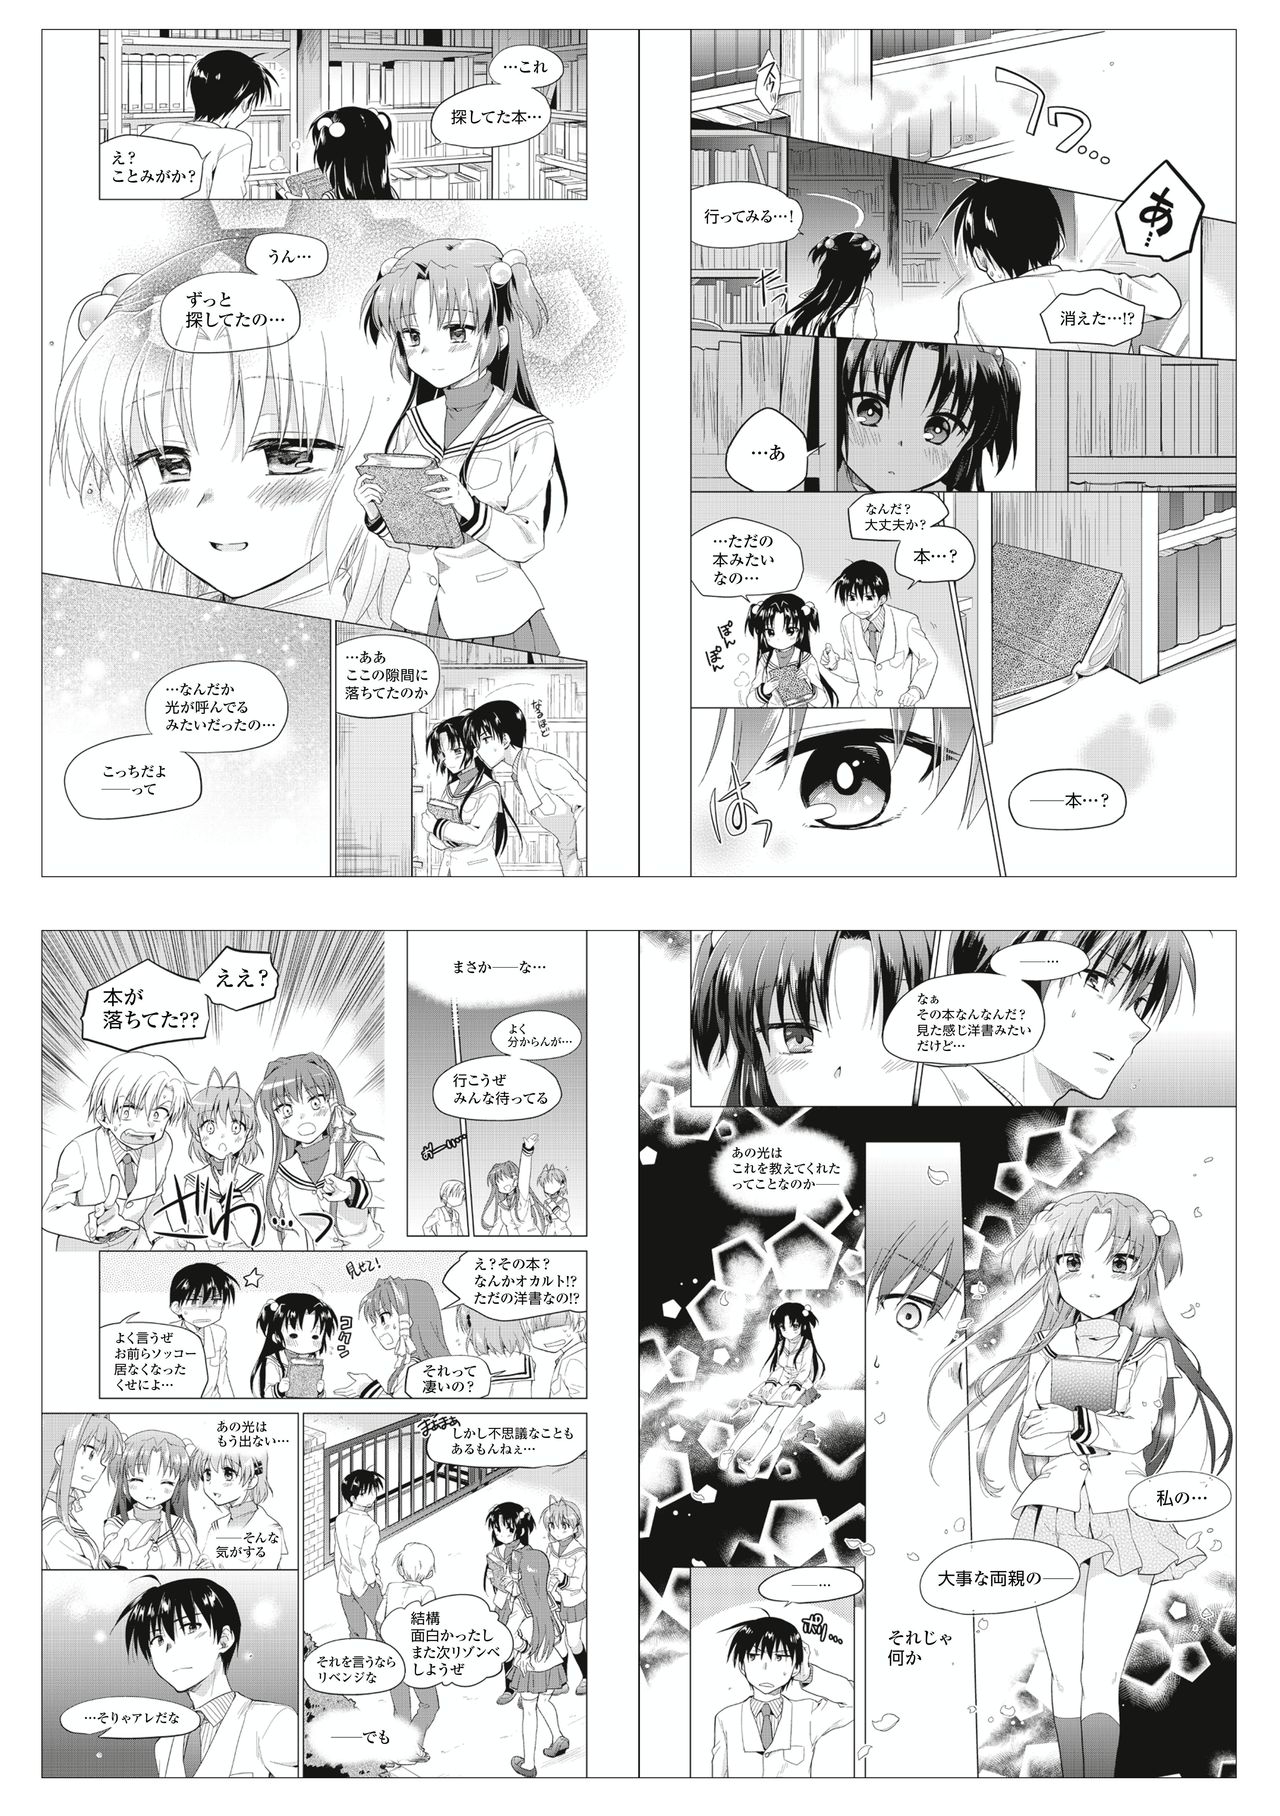 CLANNAD - Anthology Manga 59